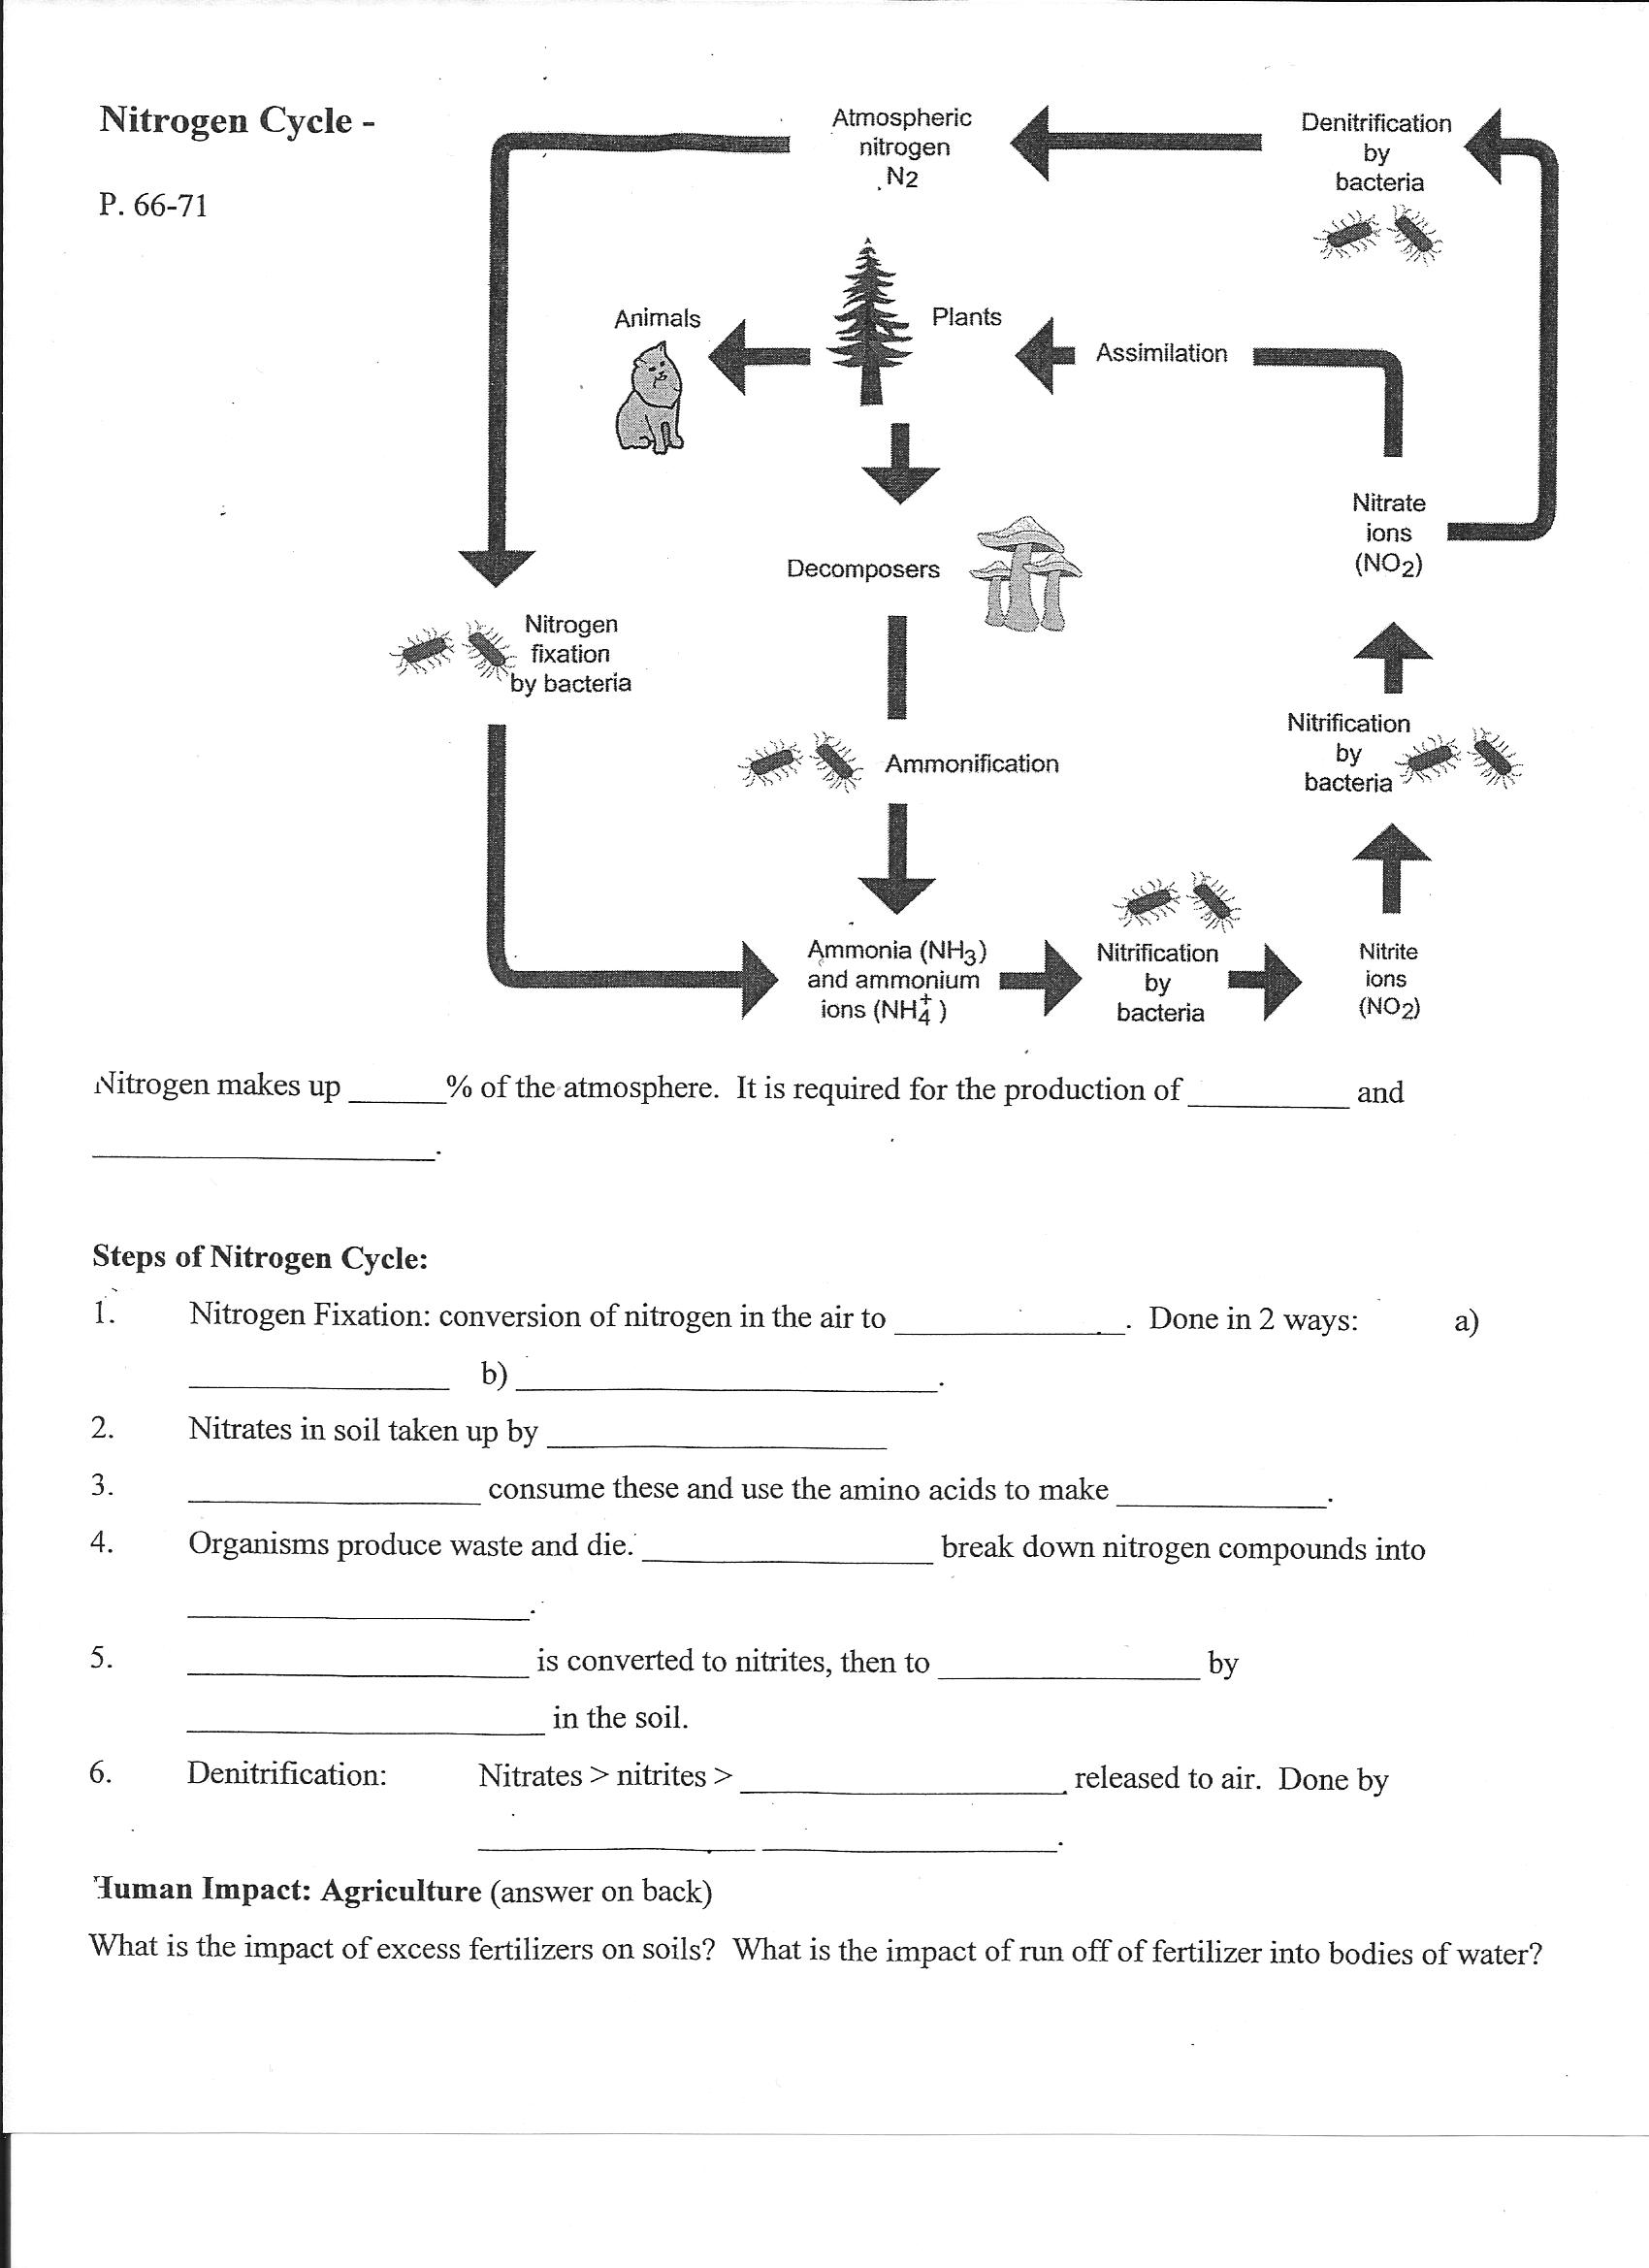 Nitrogen Cycle Worksheet Image